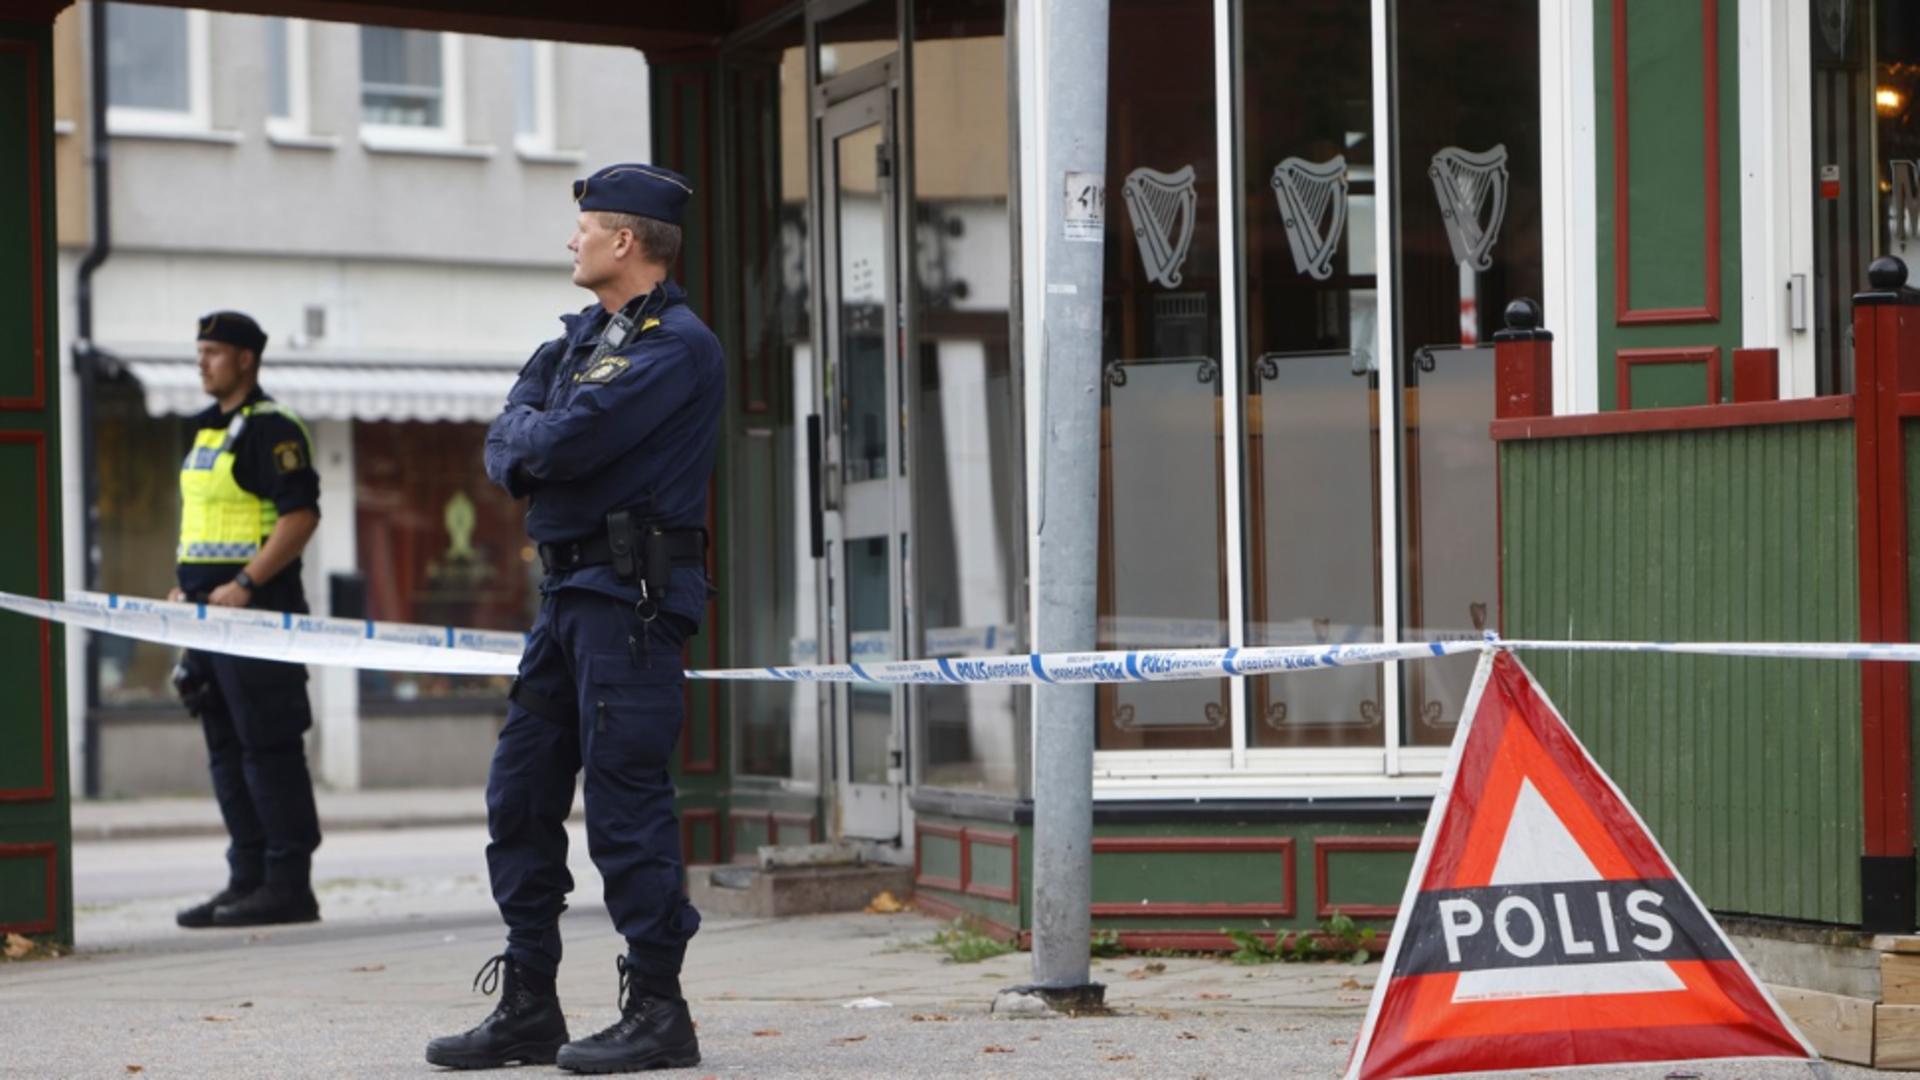 Doi morți și mai mulți răniți într-un incident cu arme de foc la 160 km de Stockholm. Foto: Profimedia